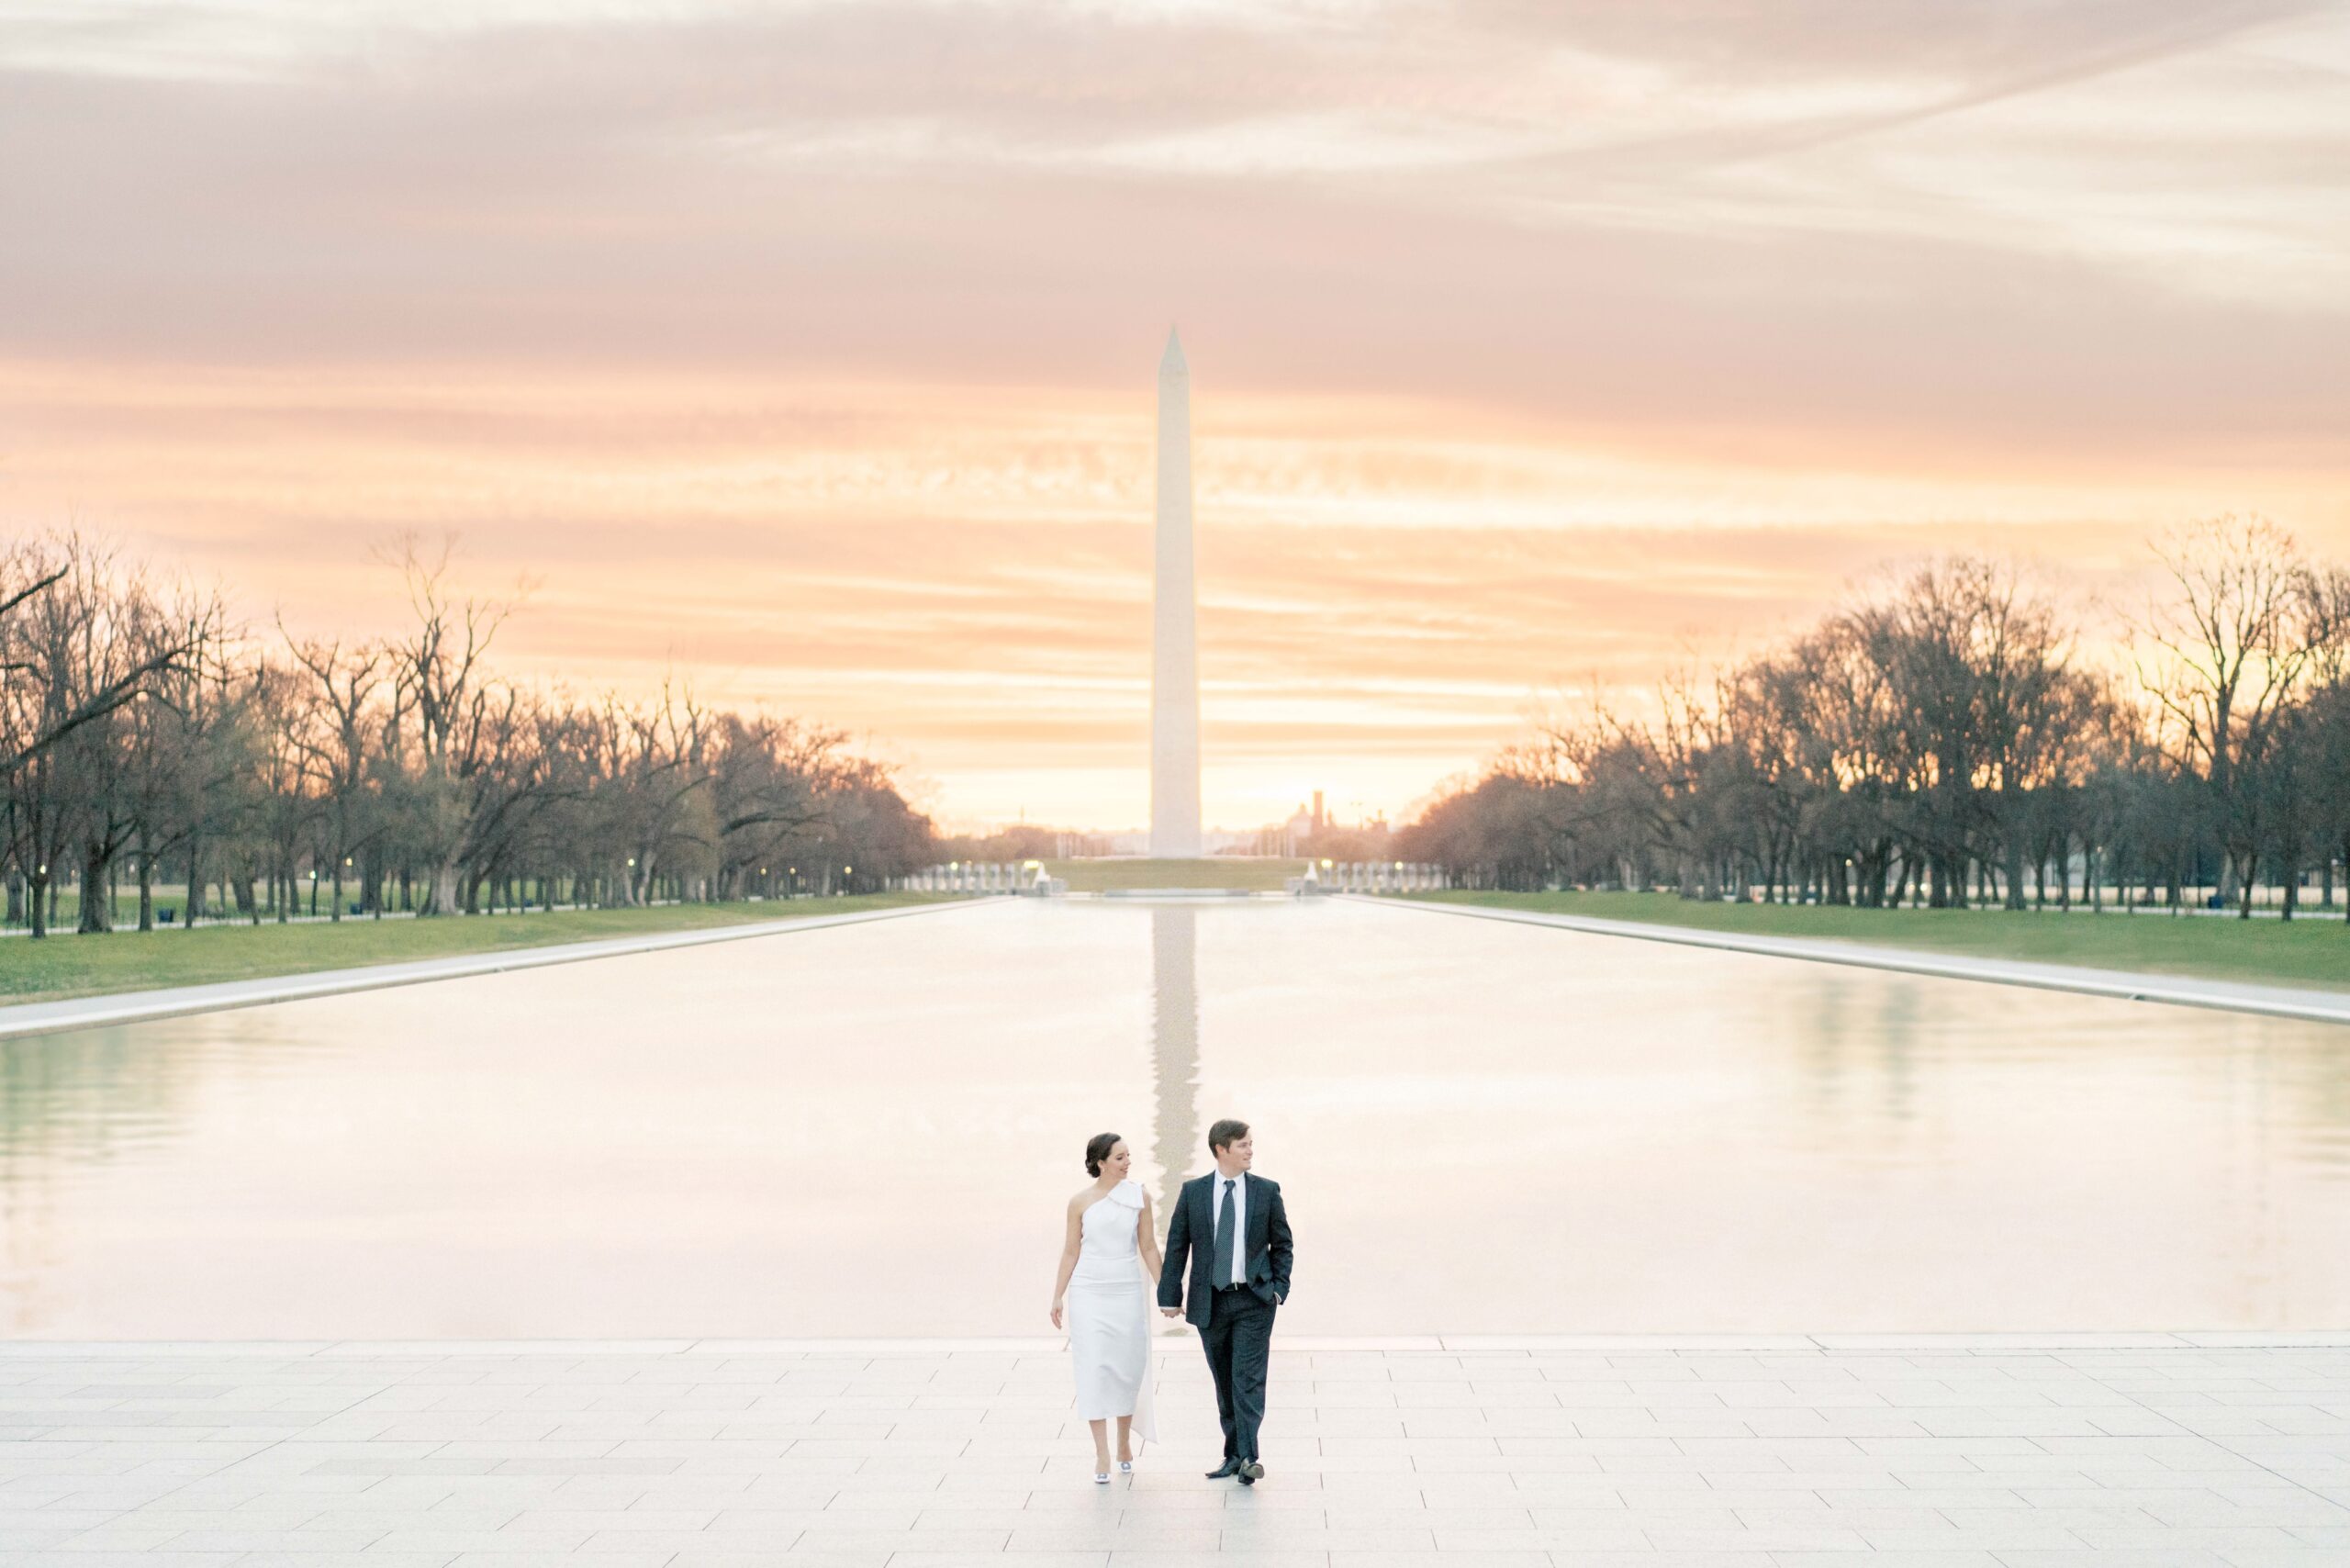 Washington Monument and Reflecting Pool engagement photos at sunrise in Washington, DC